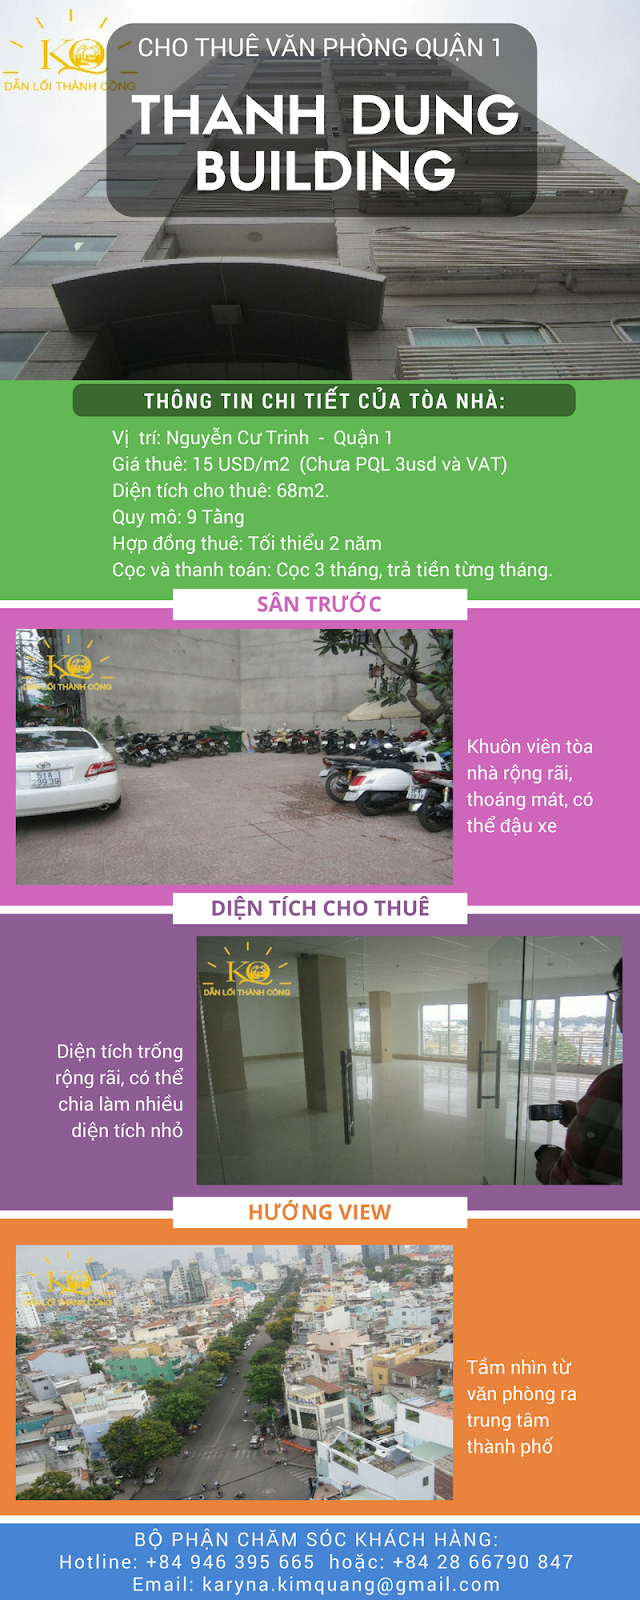 Cao ốc văn phòng Thanh Dung building Nguyễn Cư Trinh